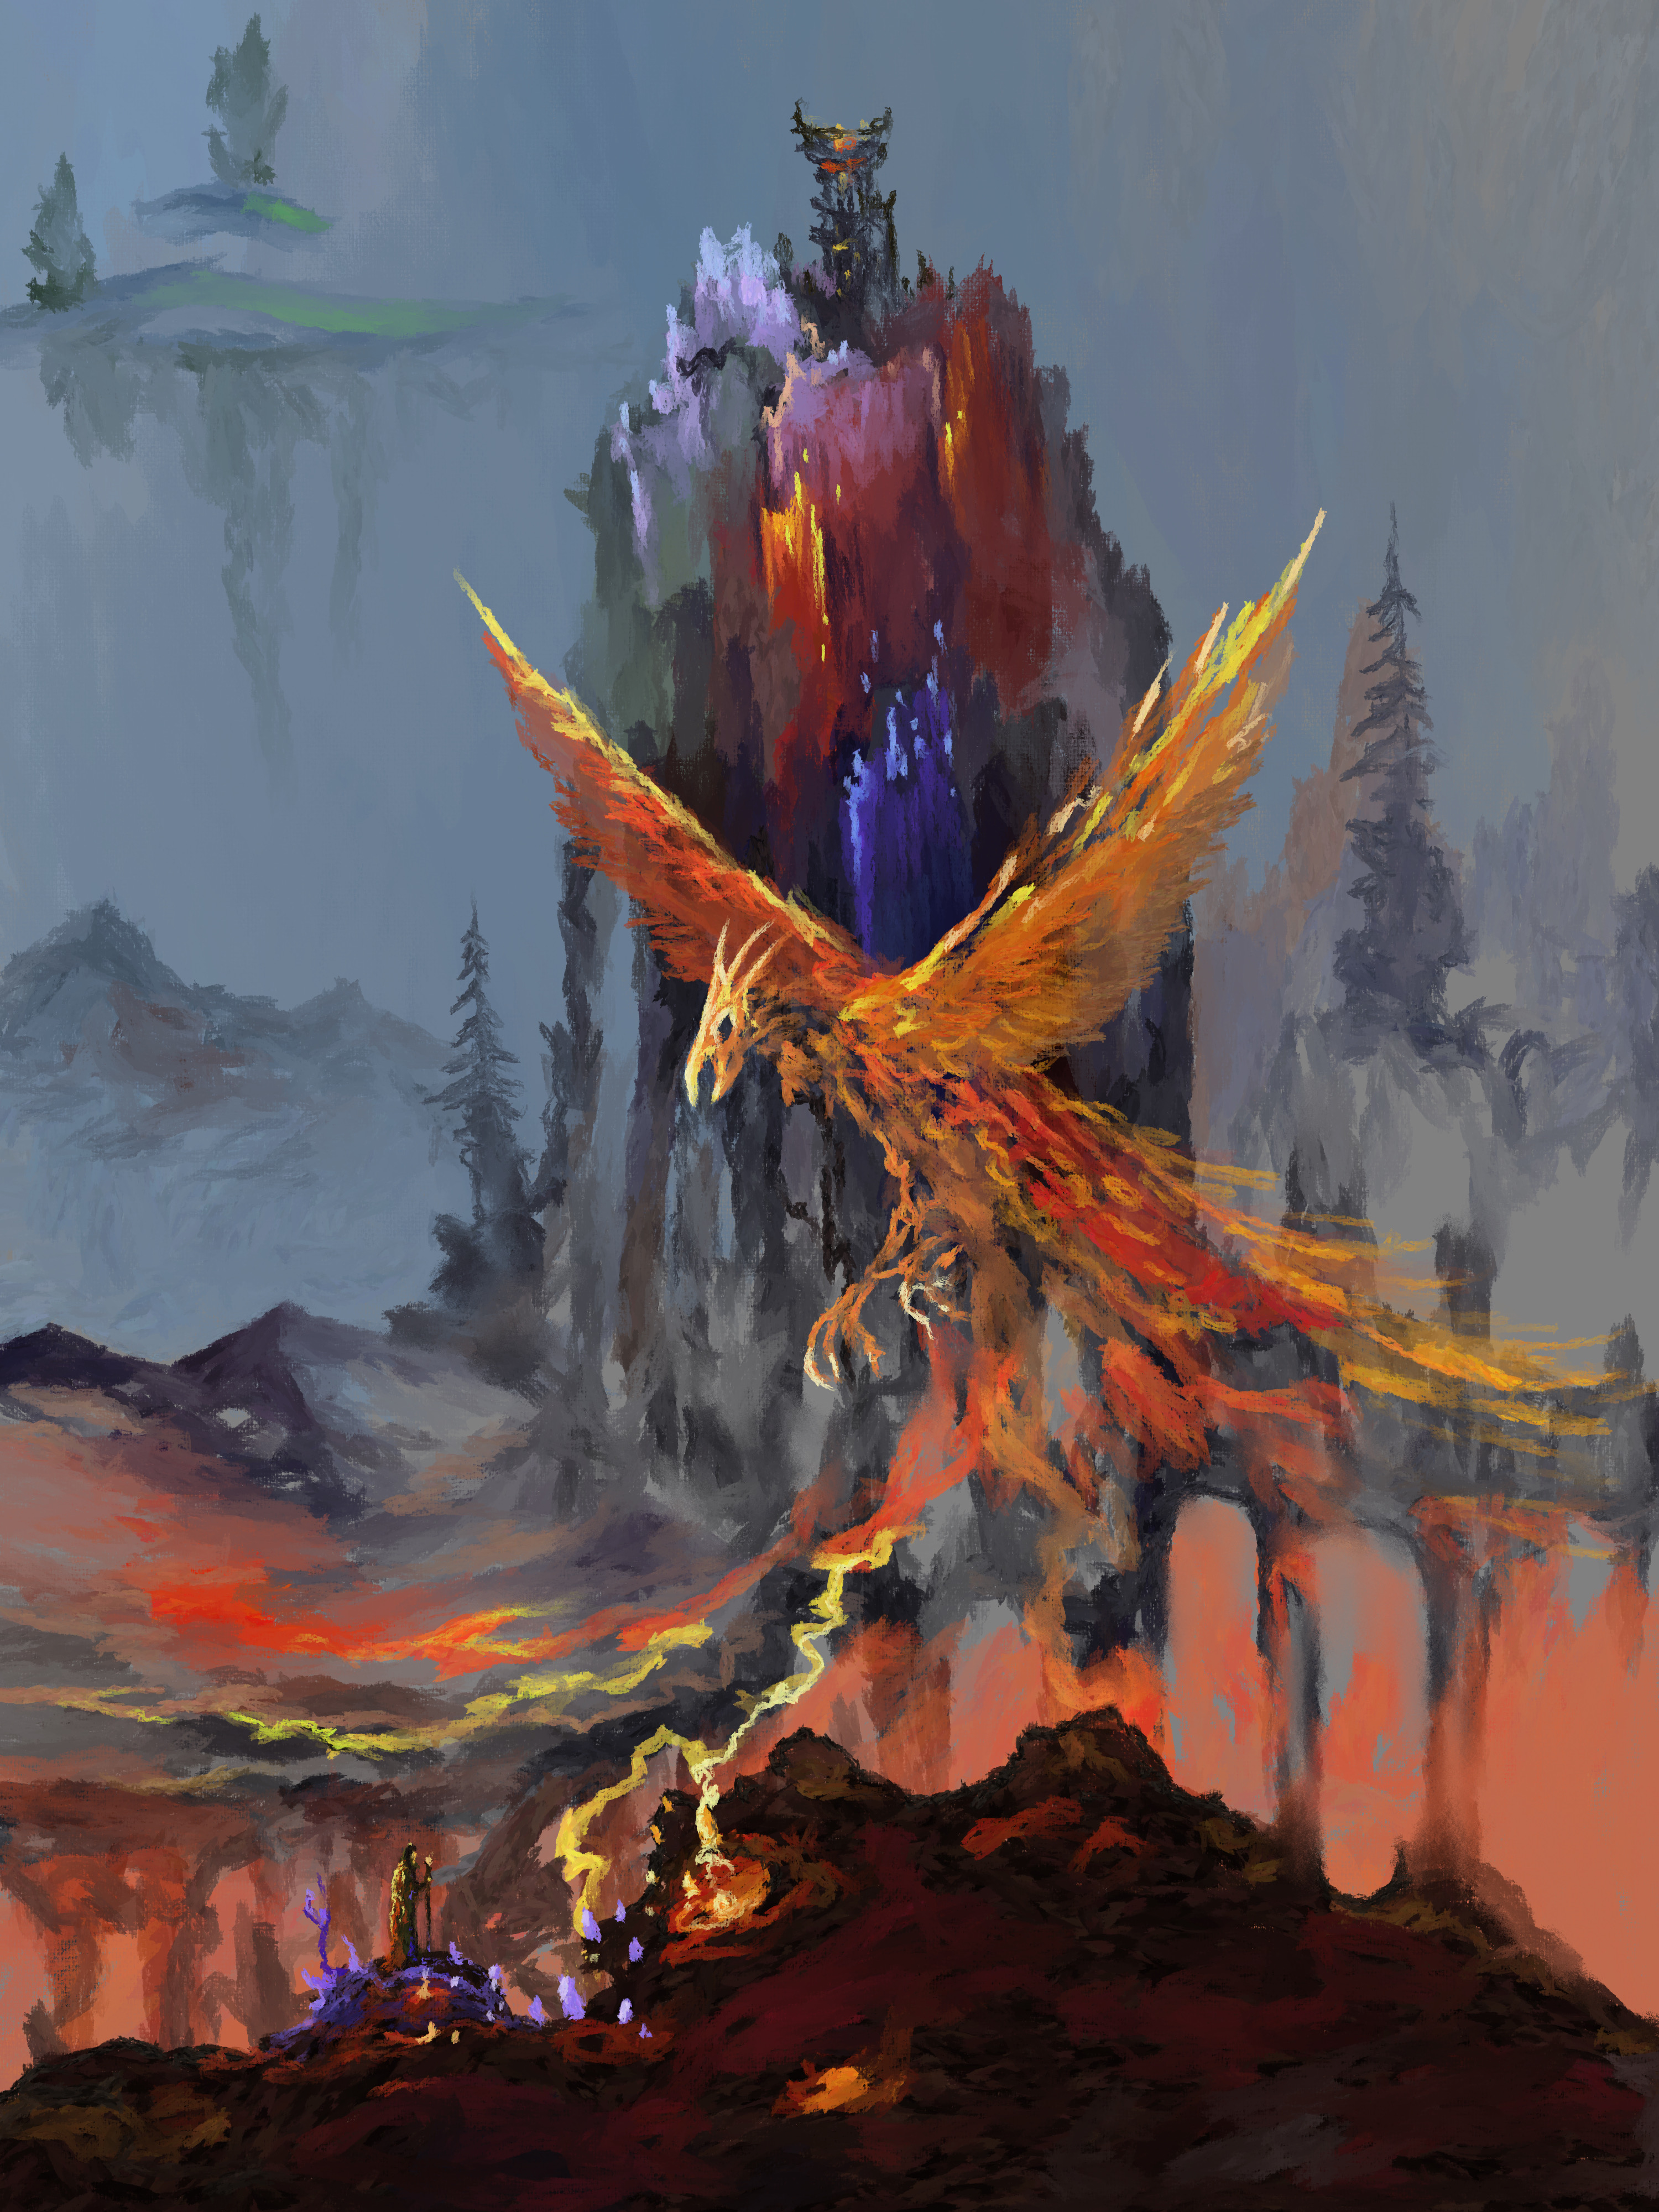 Phoenix Bird Fantasy Art